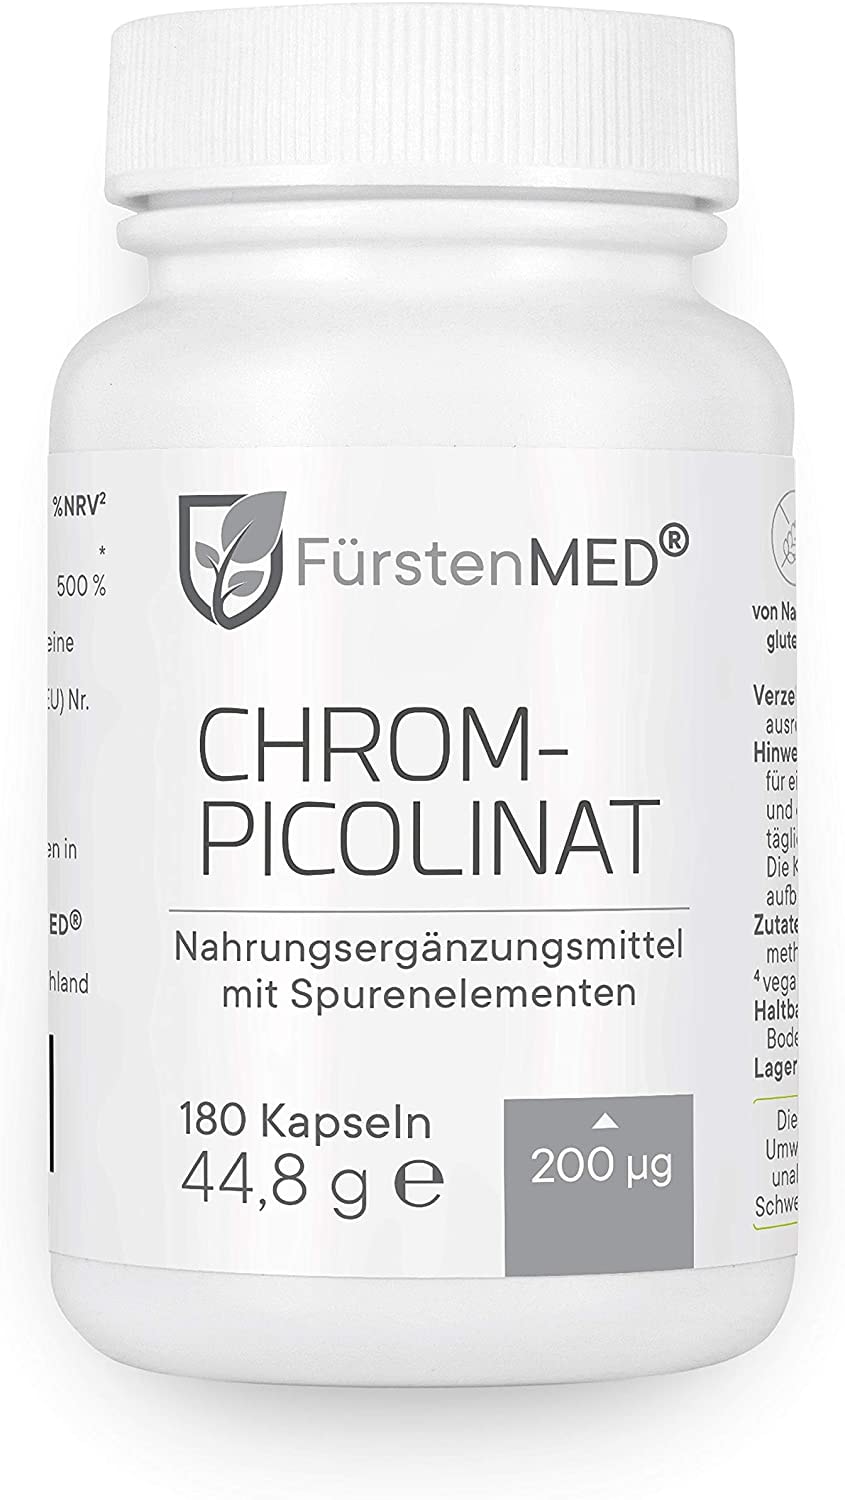 FürstenMED® Chrom Kapseln aus Chrompicolinat - Essentielles Spurenelement mit 200 mcg - 180 Vegane Kapseln - keine Tabletten